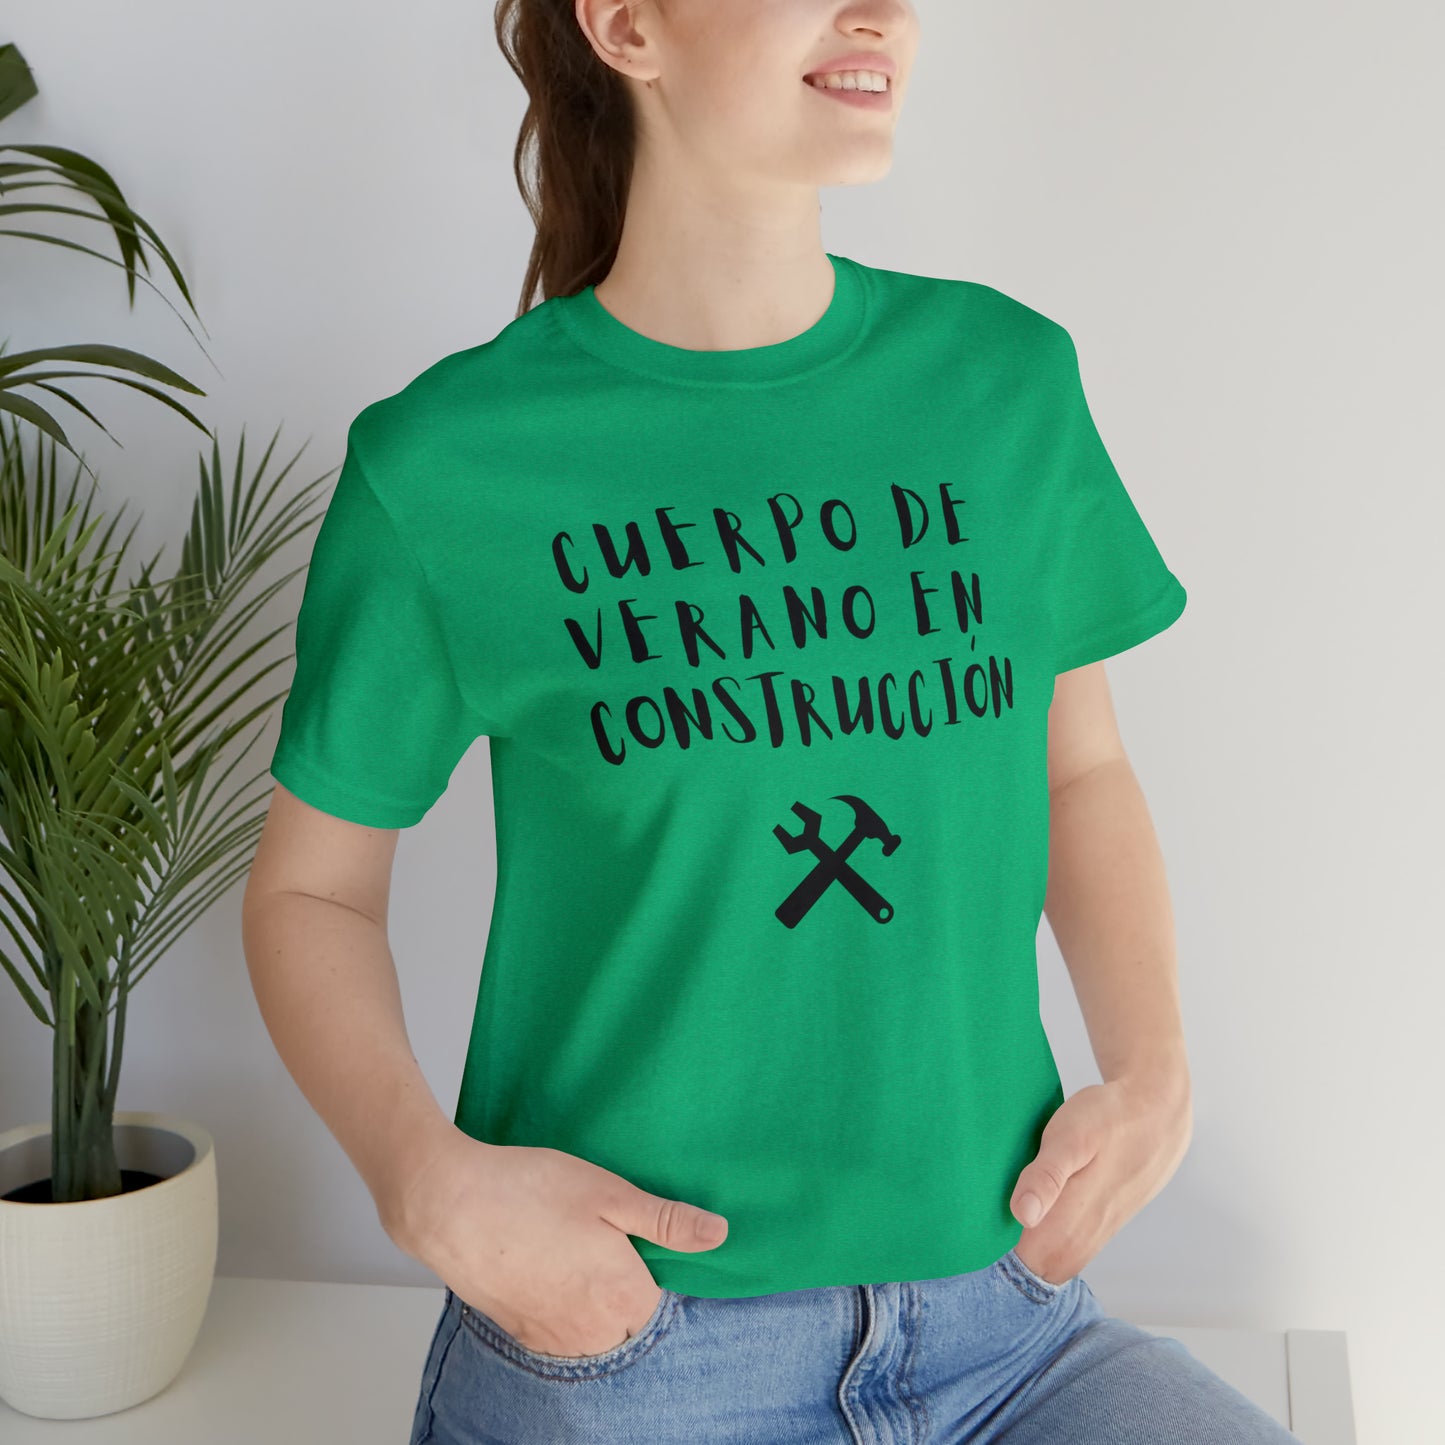 Cuerpo De Verano en Construccion, Shirt